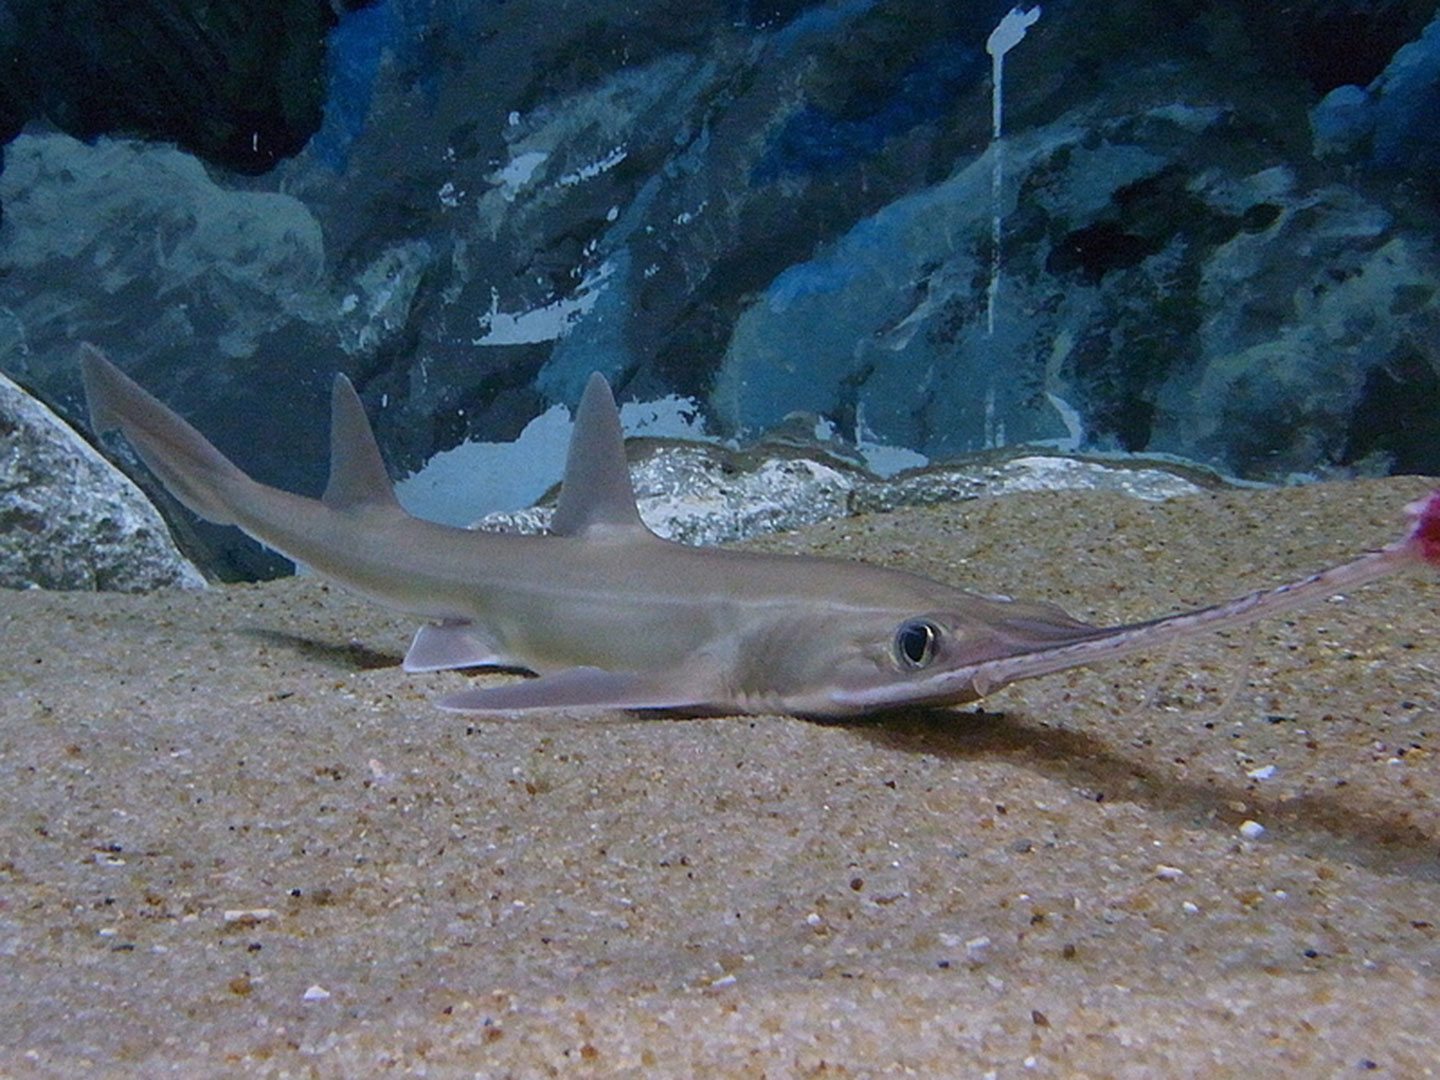 A Japanese saw shark on the ocean floor